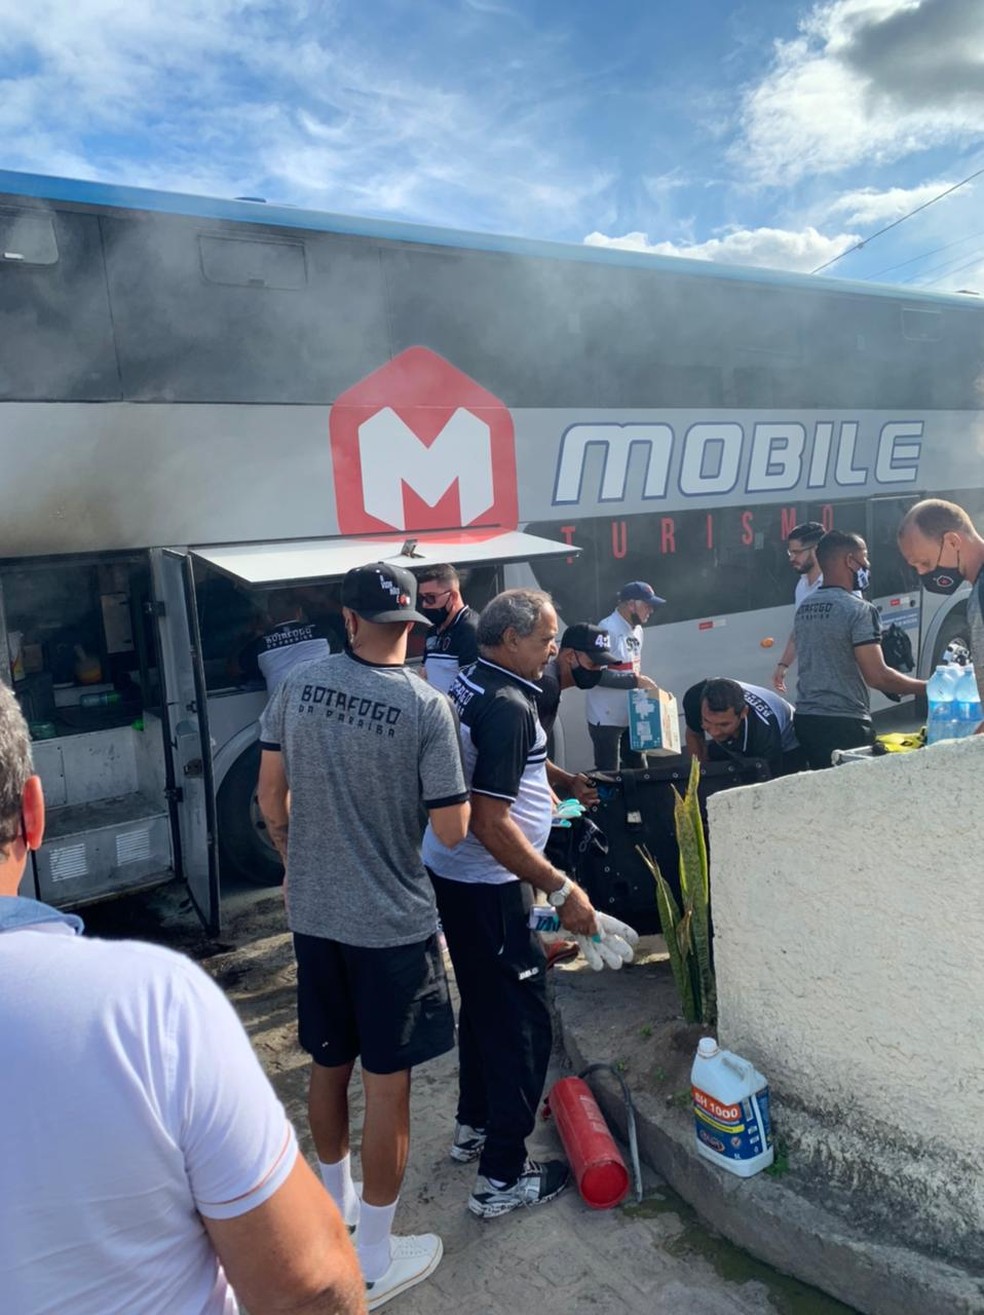 Ônibus do Atlético-PB pega fogo em viagem, mas delegação sai ilesa, atlético-pb